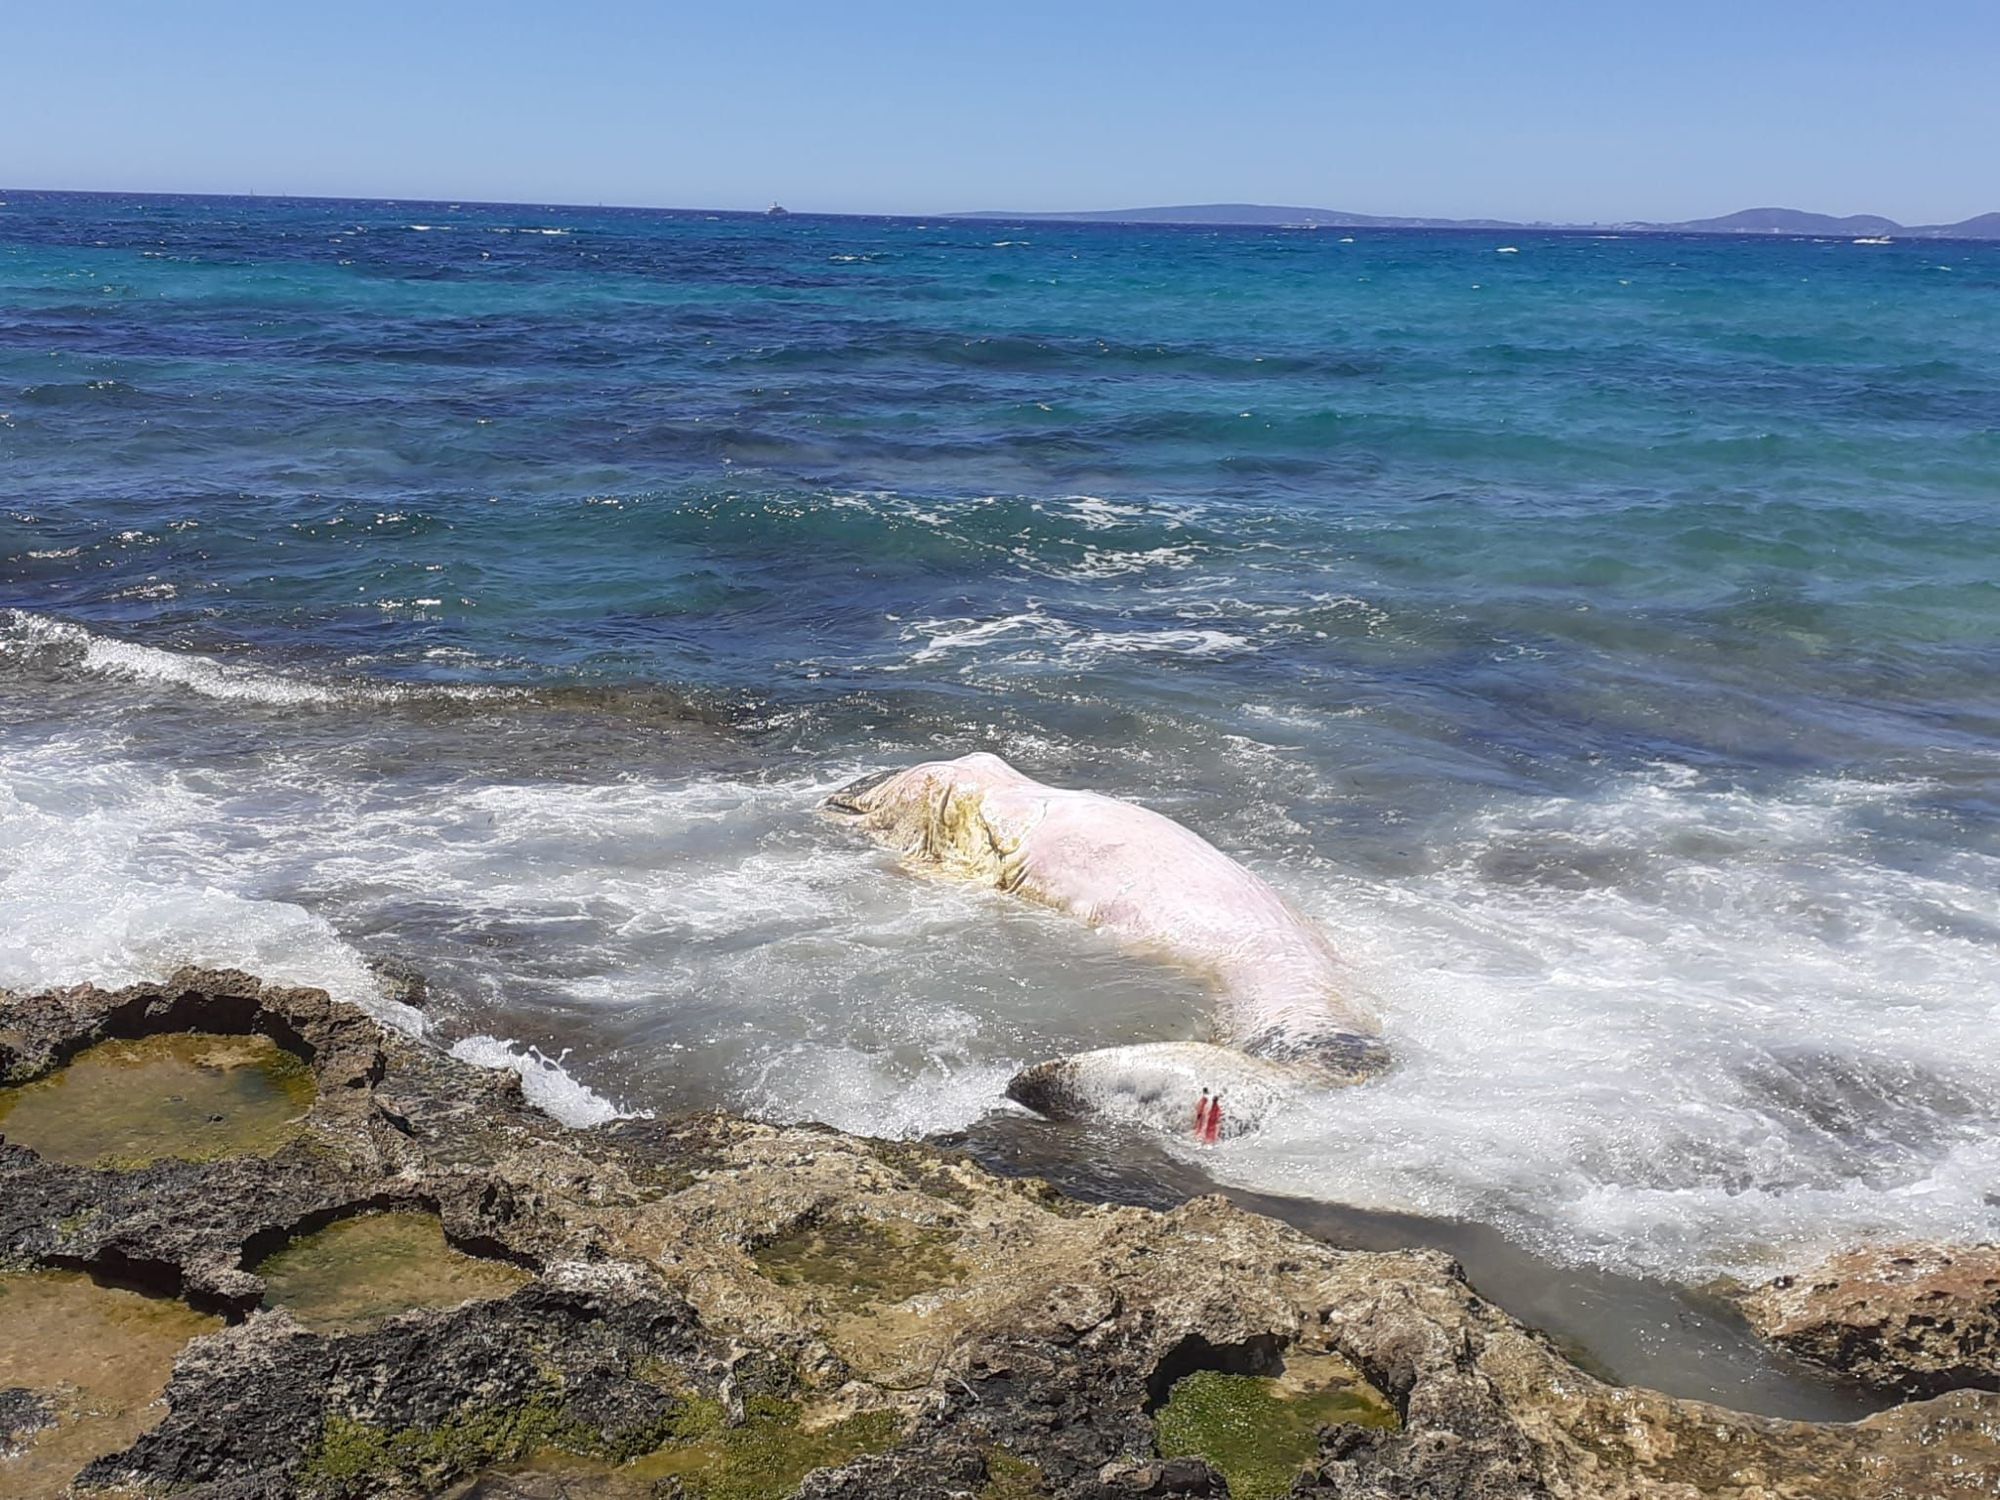 El cadver del cachalote, en aguas de Mallorca